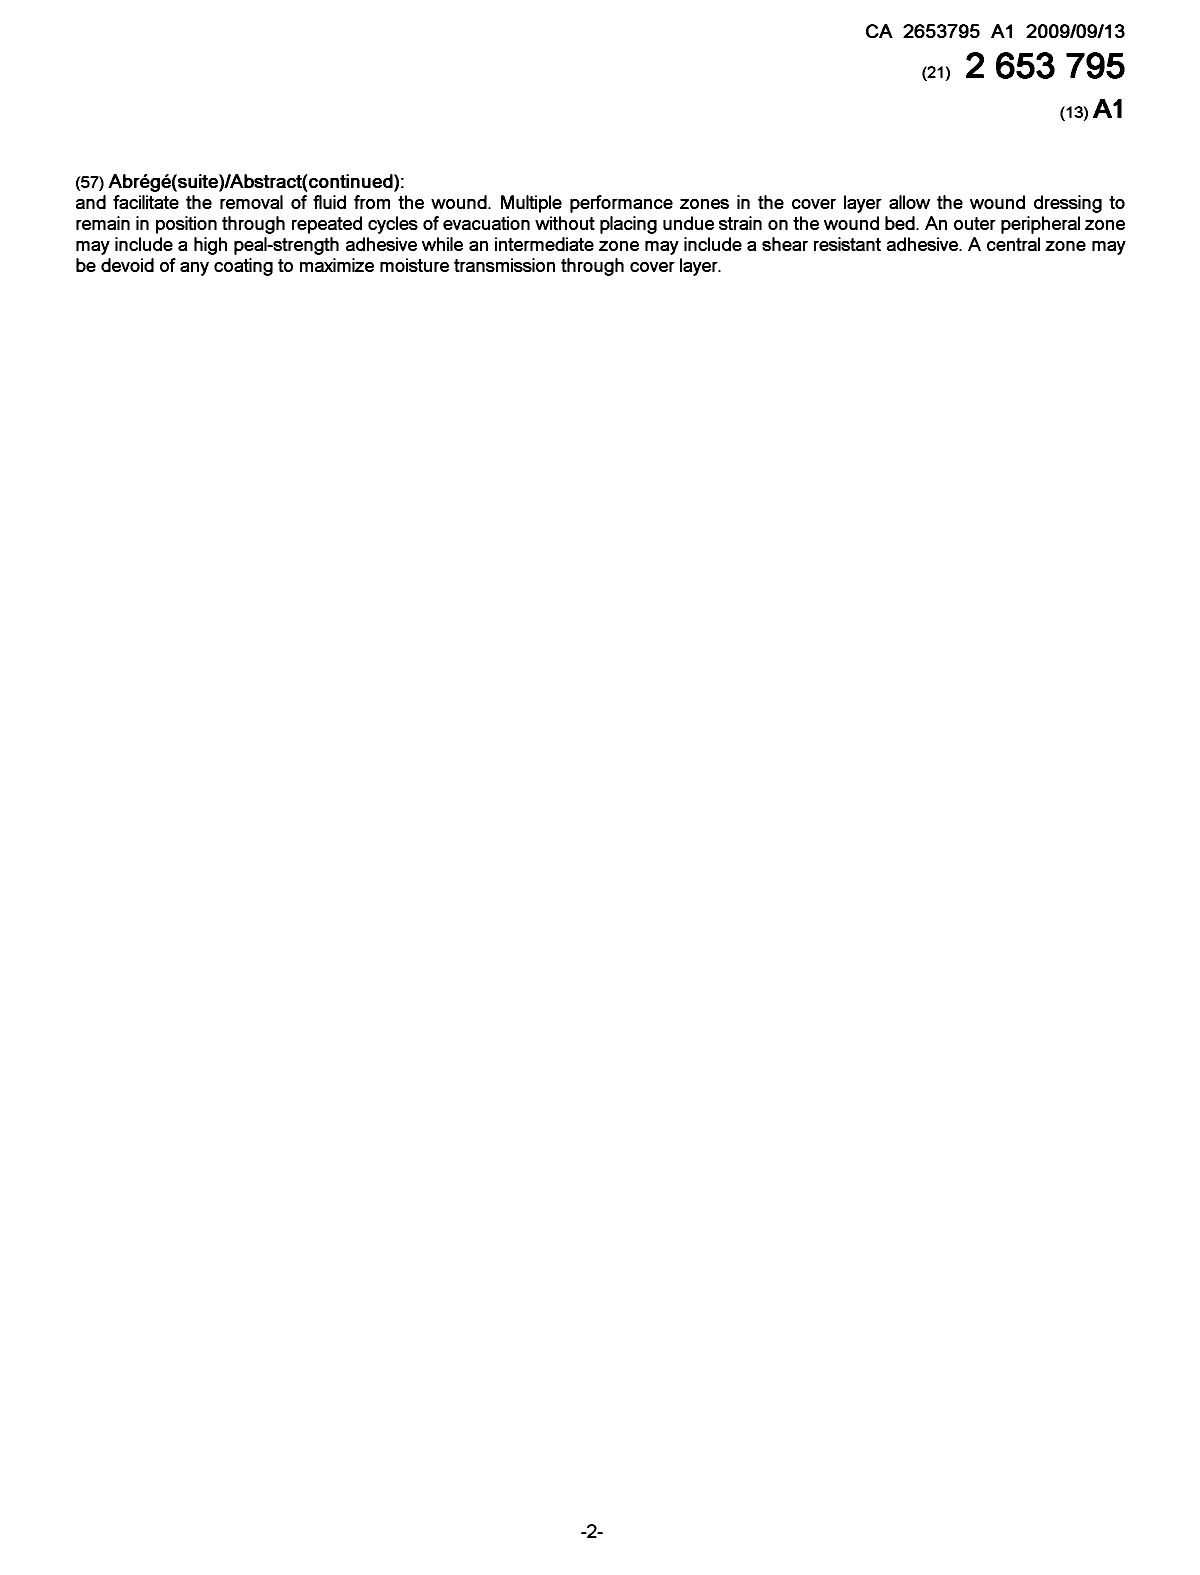 Document de brevet canadien 2653795. Page couverture 20081209. Image 2 de 2